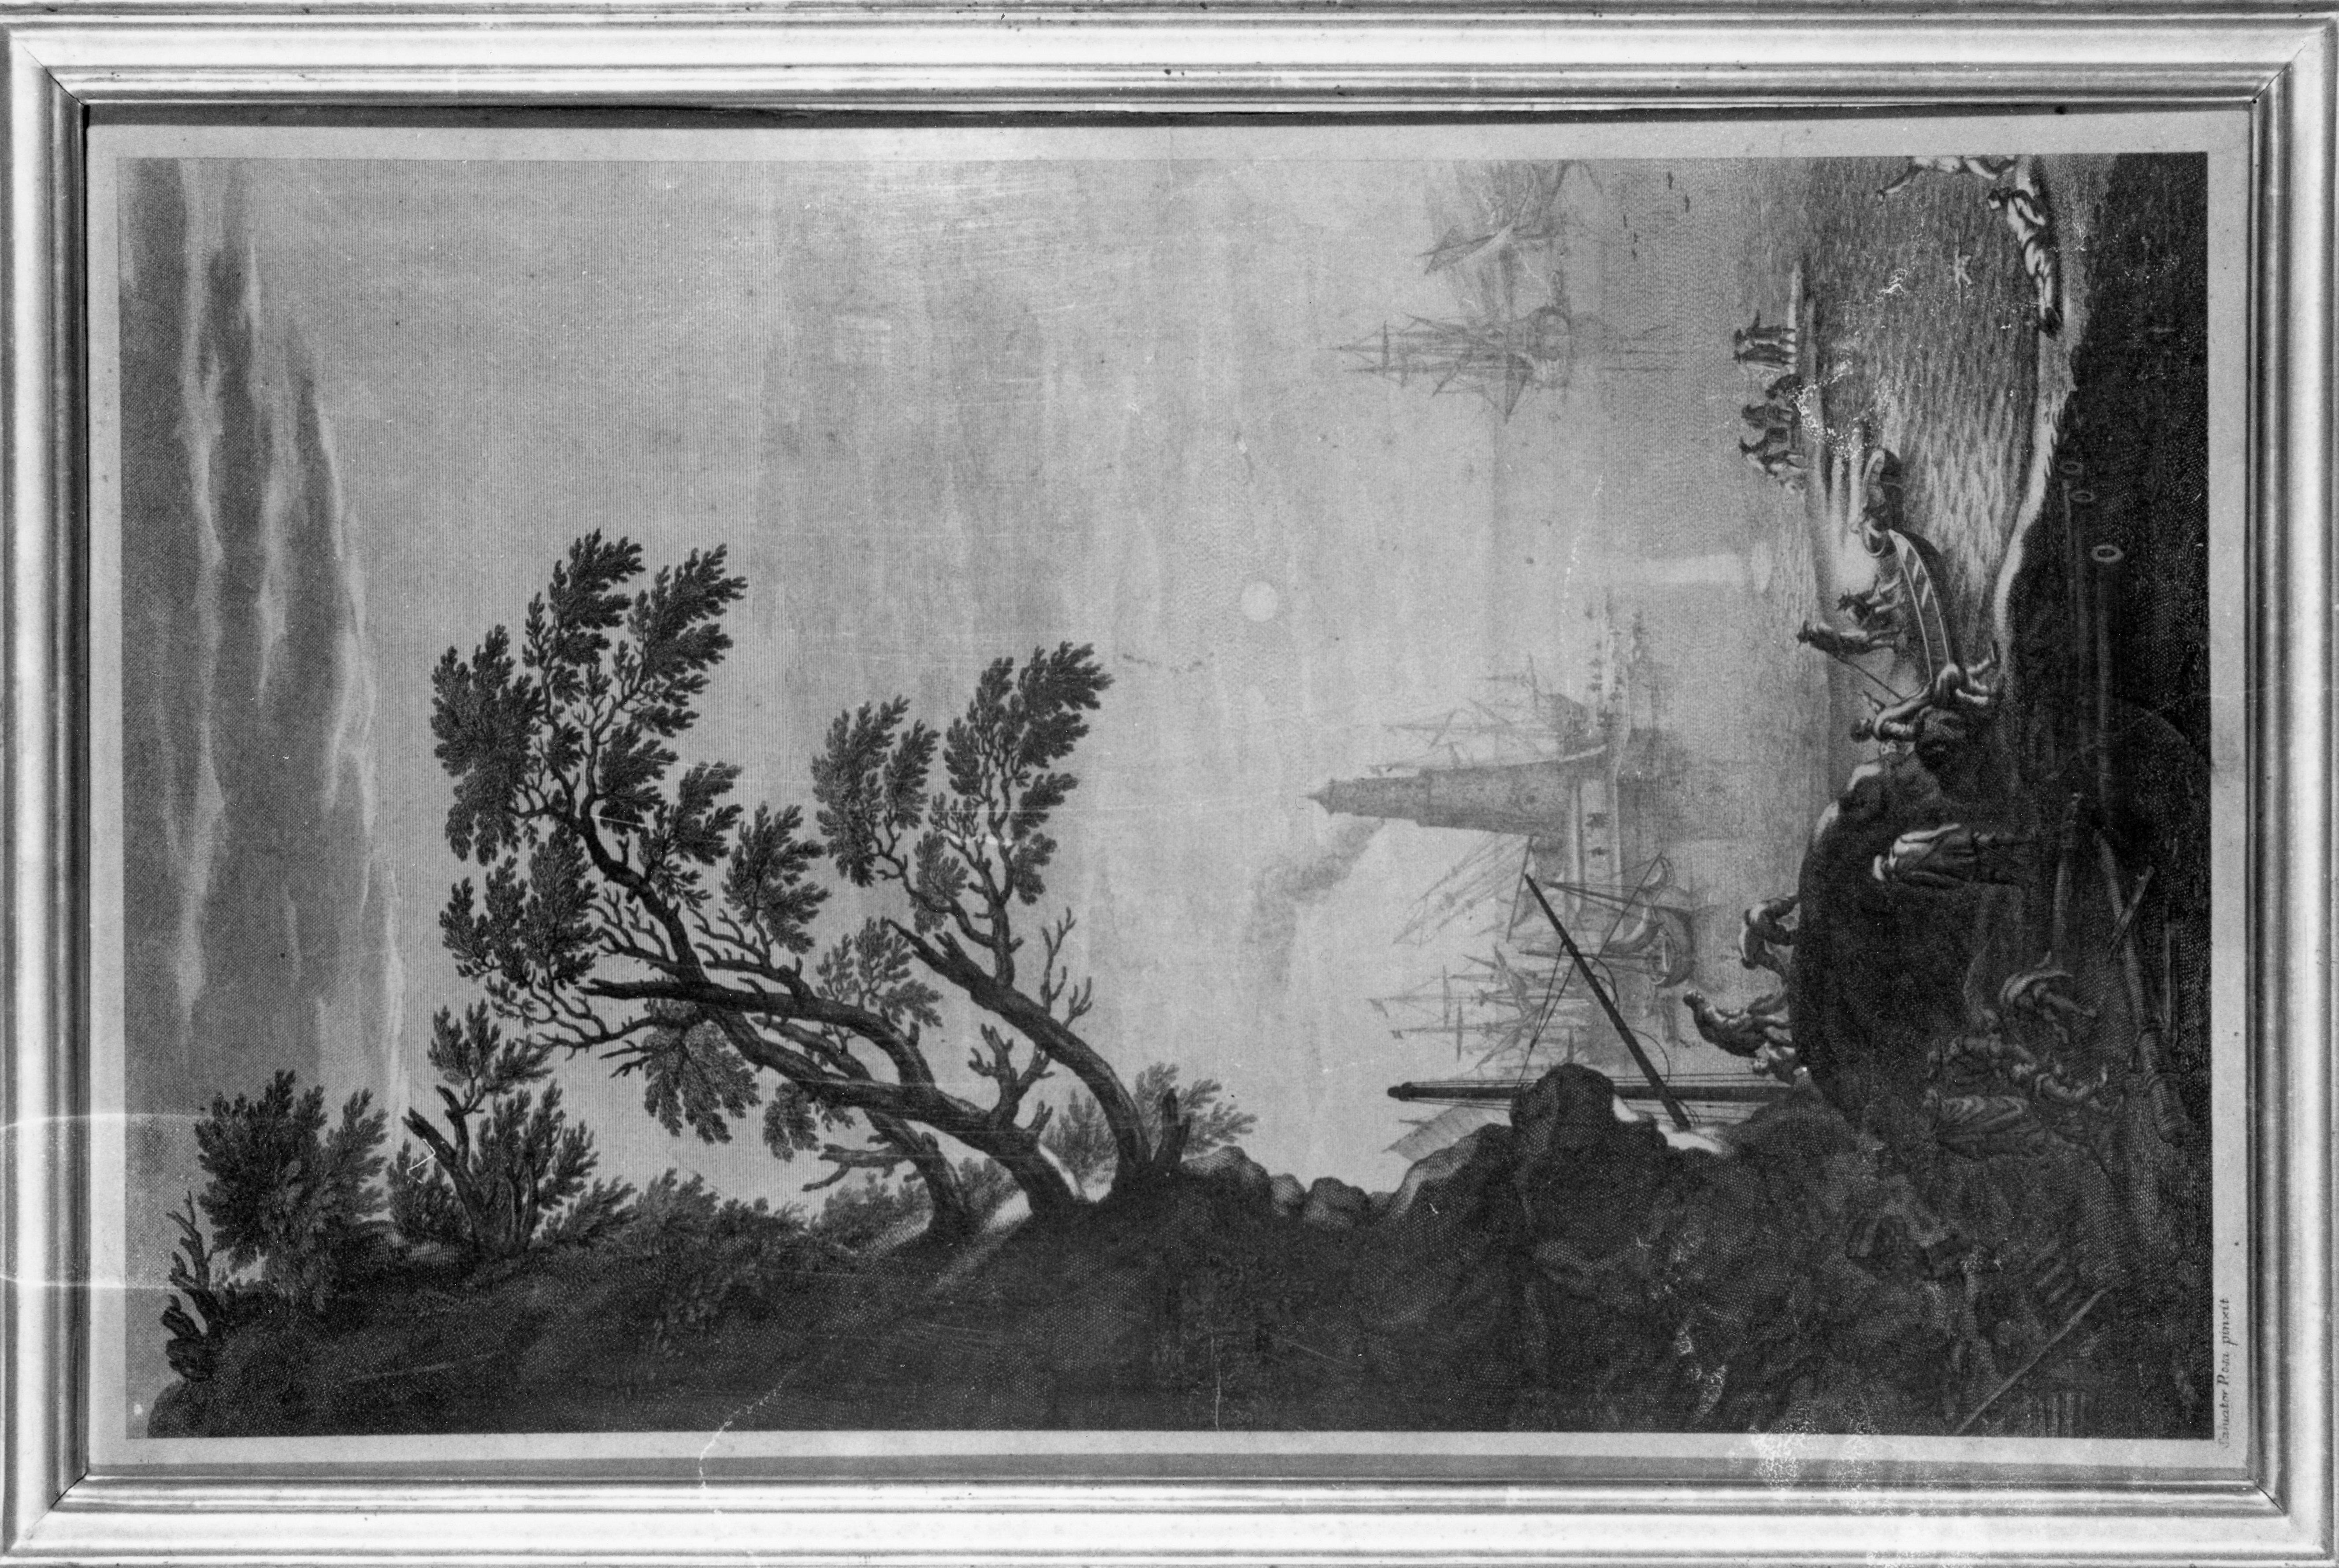 paesaggio con litorale e faro, paesaggio marino (stampa) di Rosa Salvatore, Verkruys Theodor (sec. XVIII)